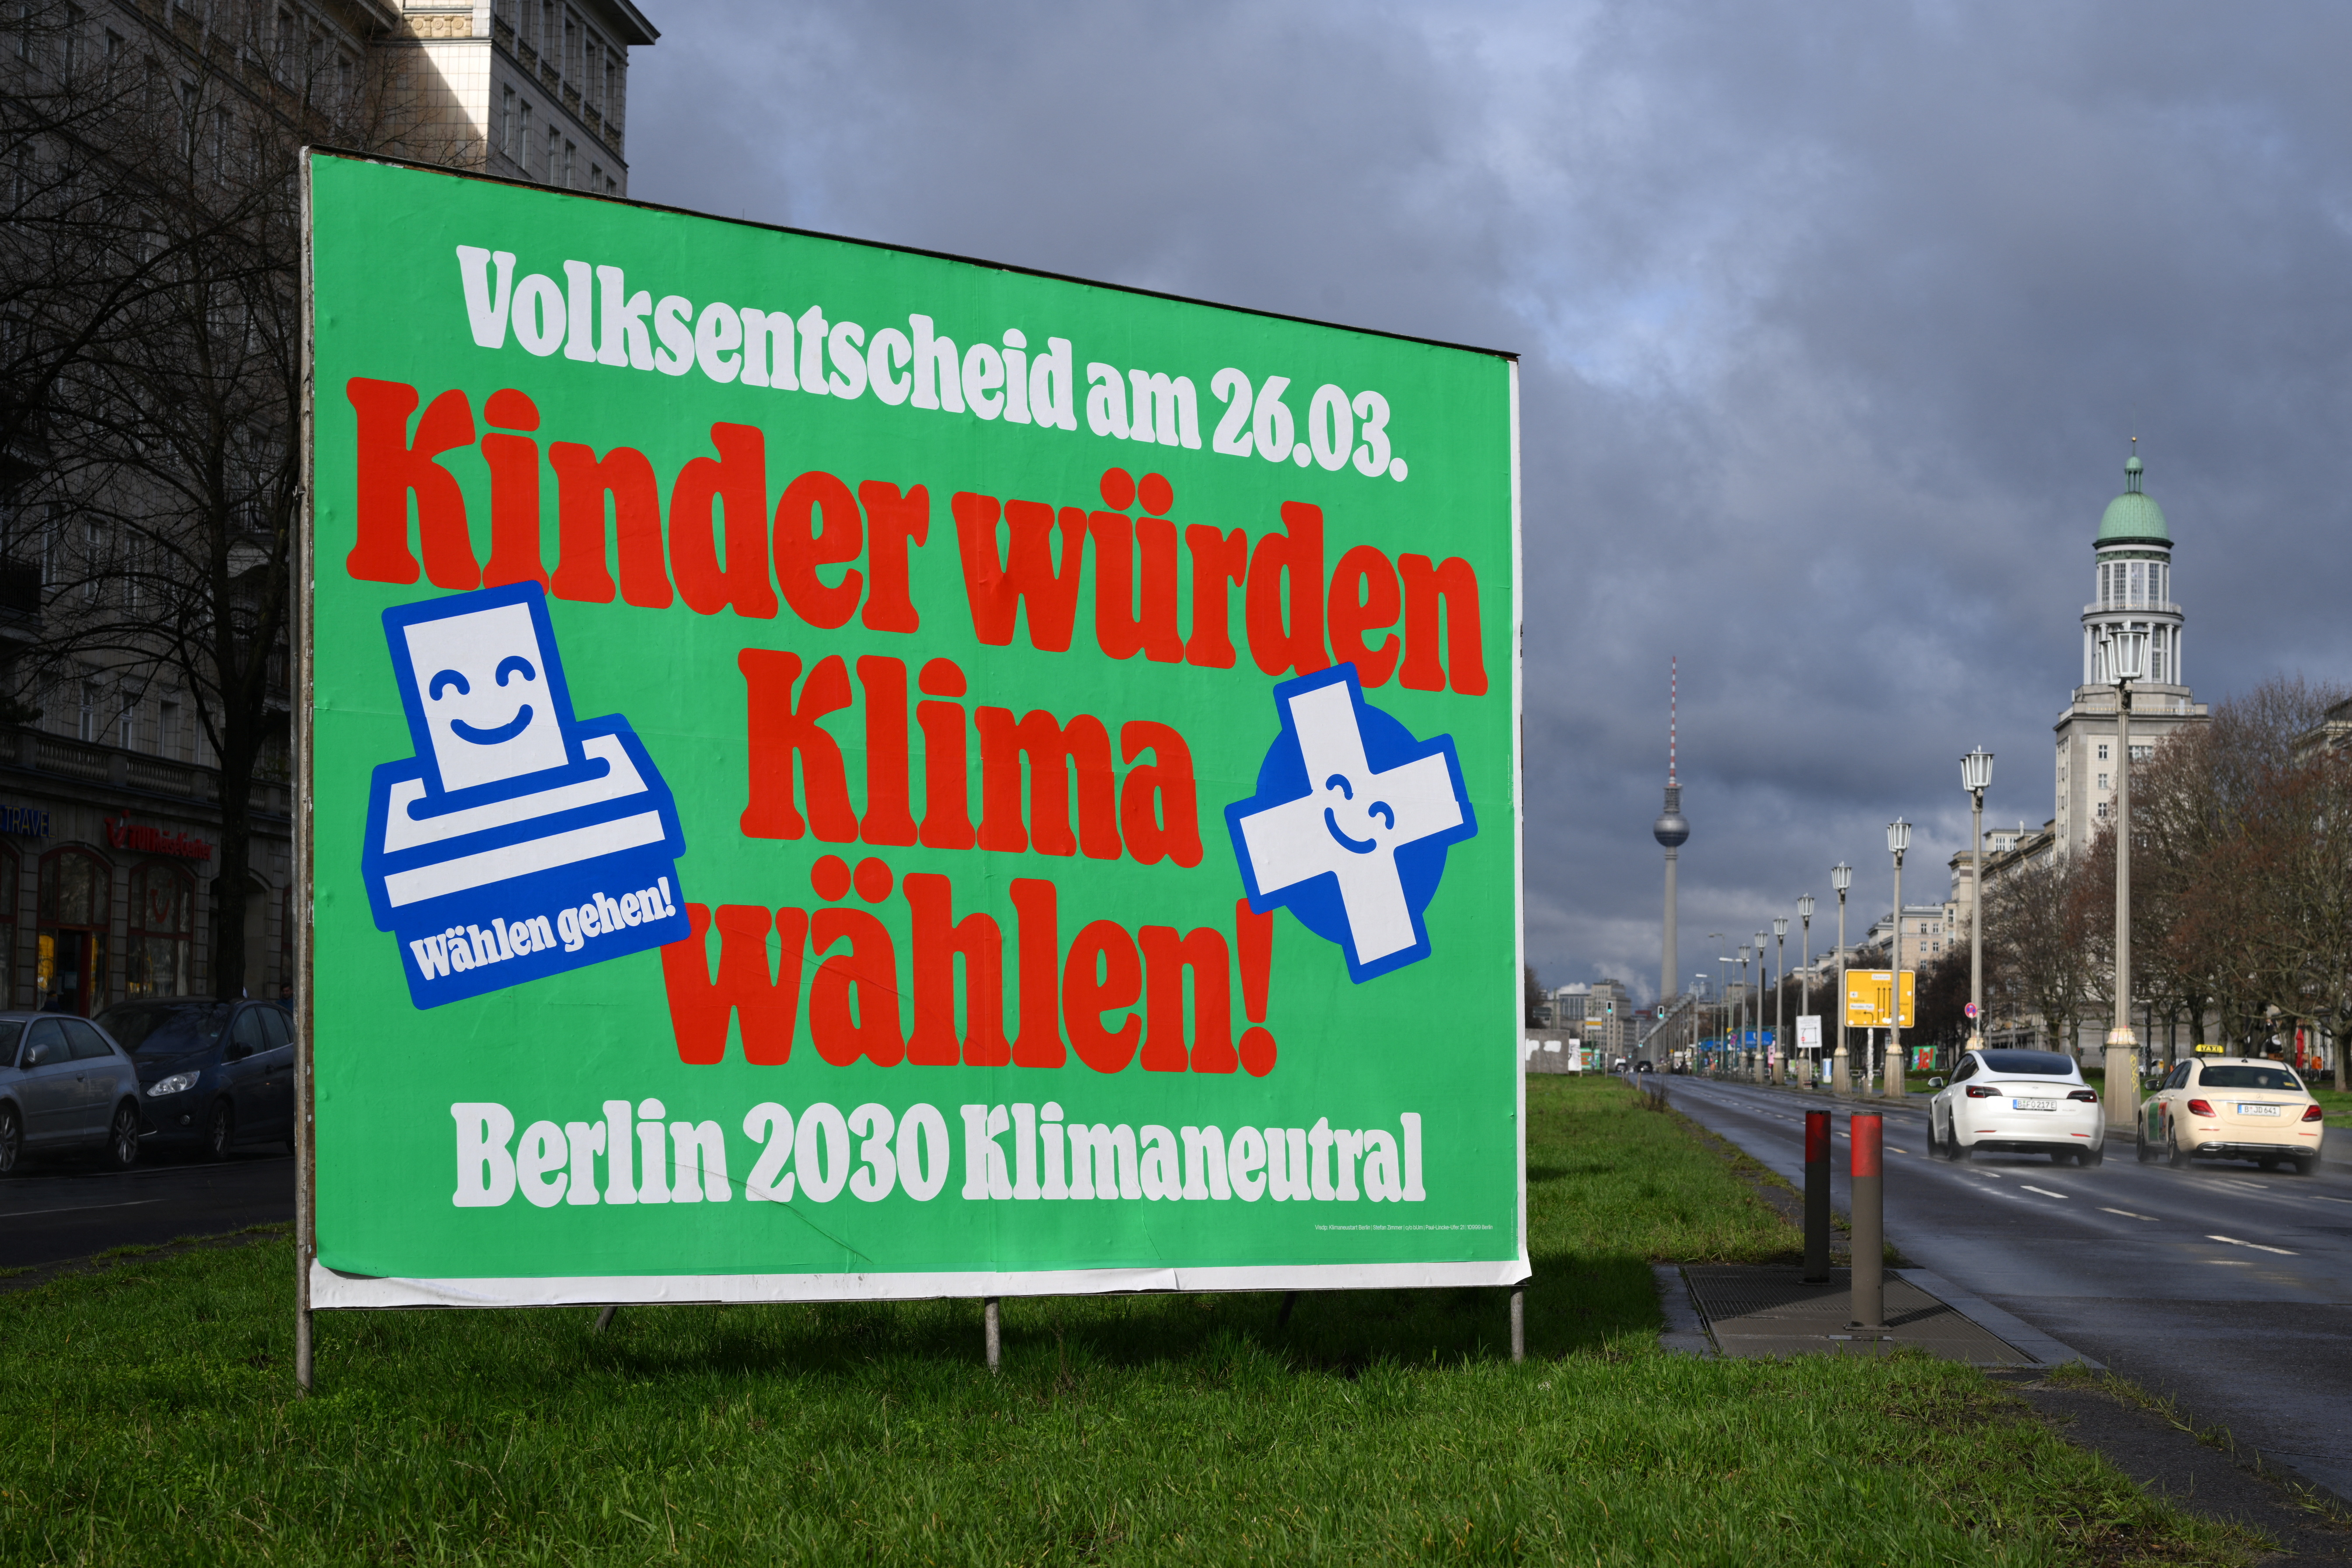 Referendum 'Berlin 2030 Climate Neutral' in Berlin